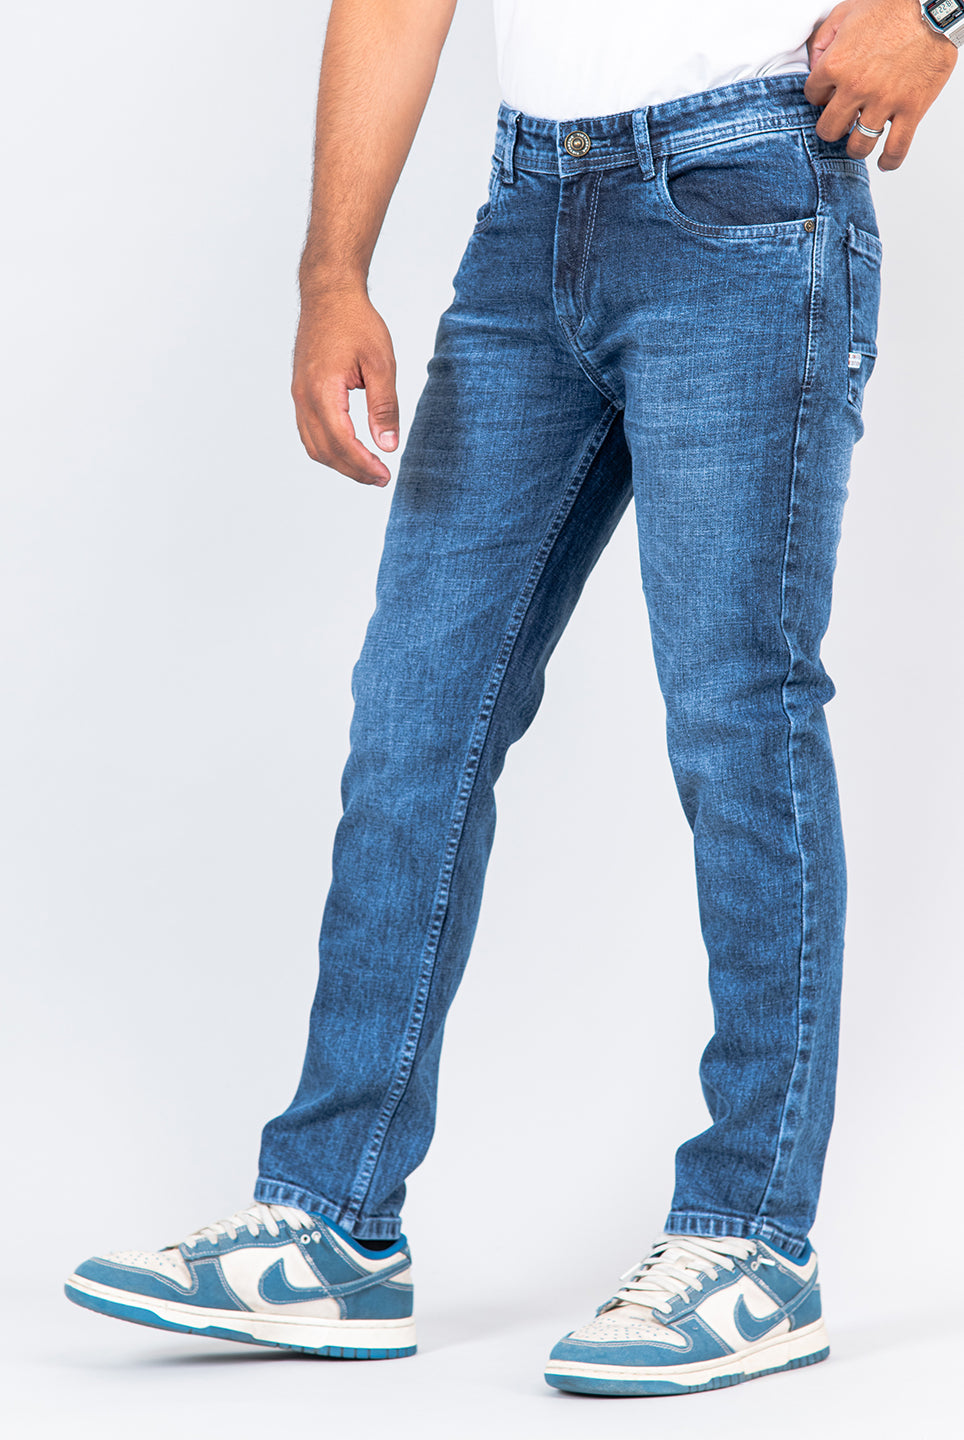 Denim Jeans for men 